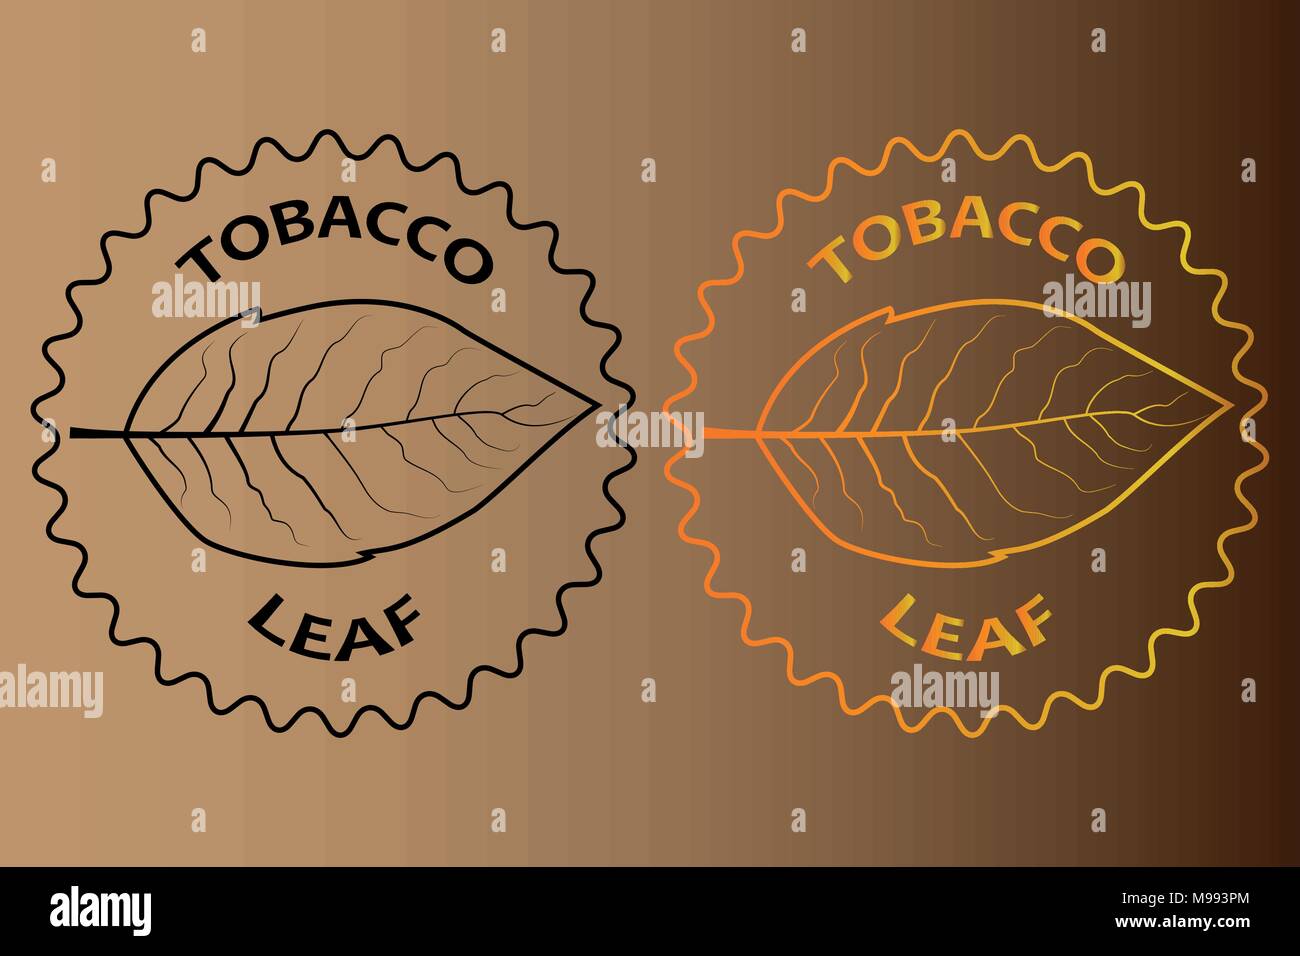 Foglie di tabacco adesivo - illustrazione vettoriale Illustrazione Vettoriale